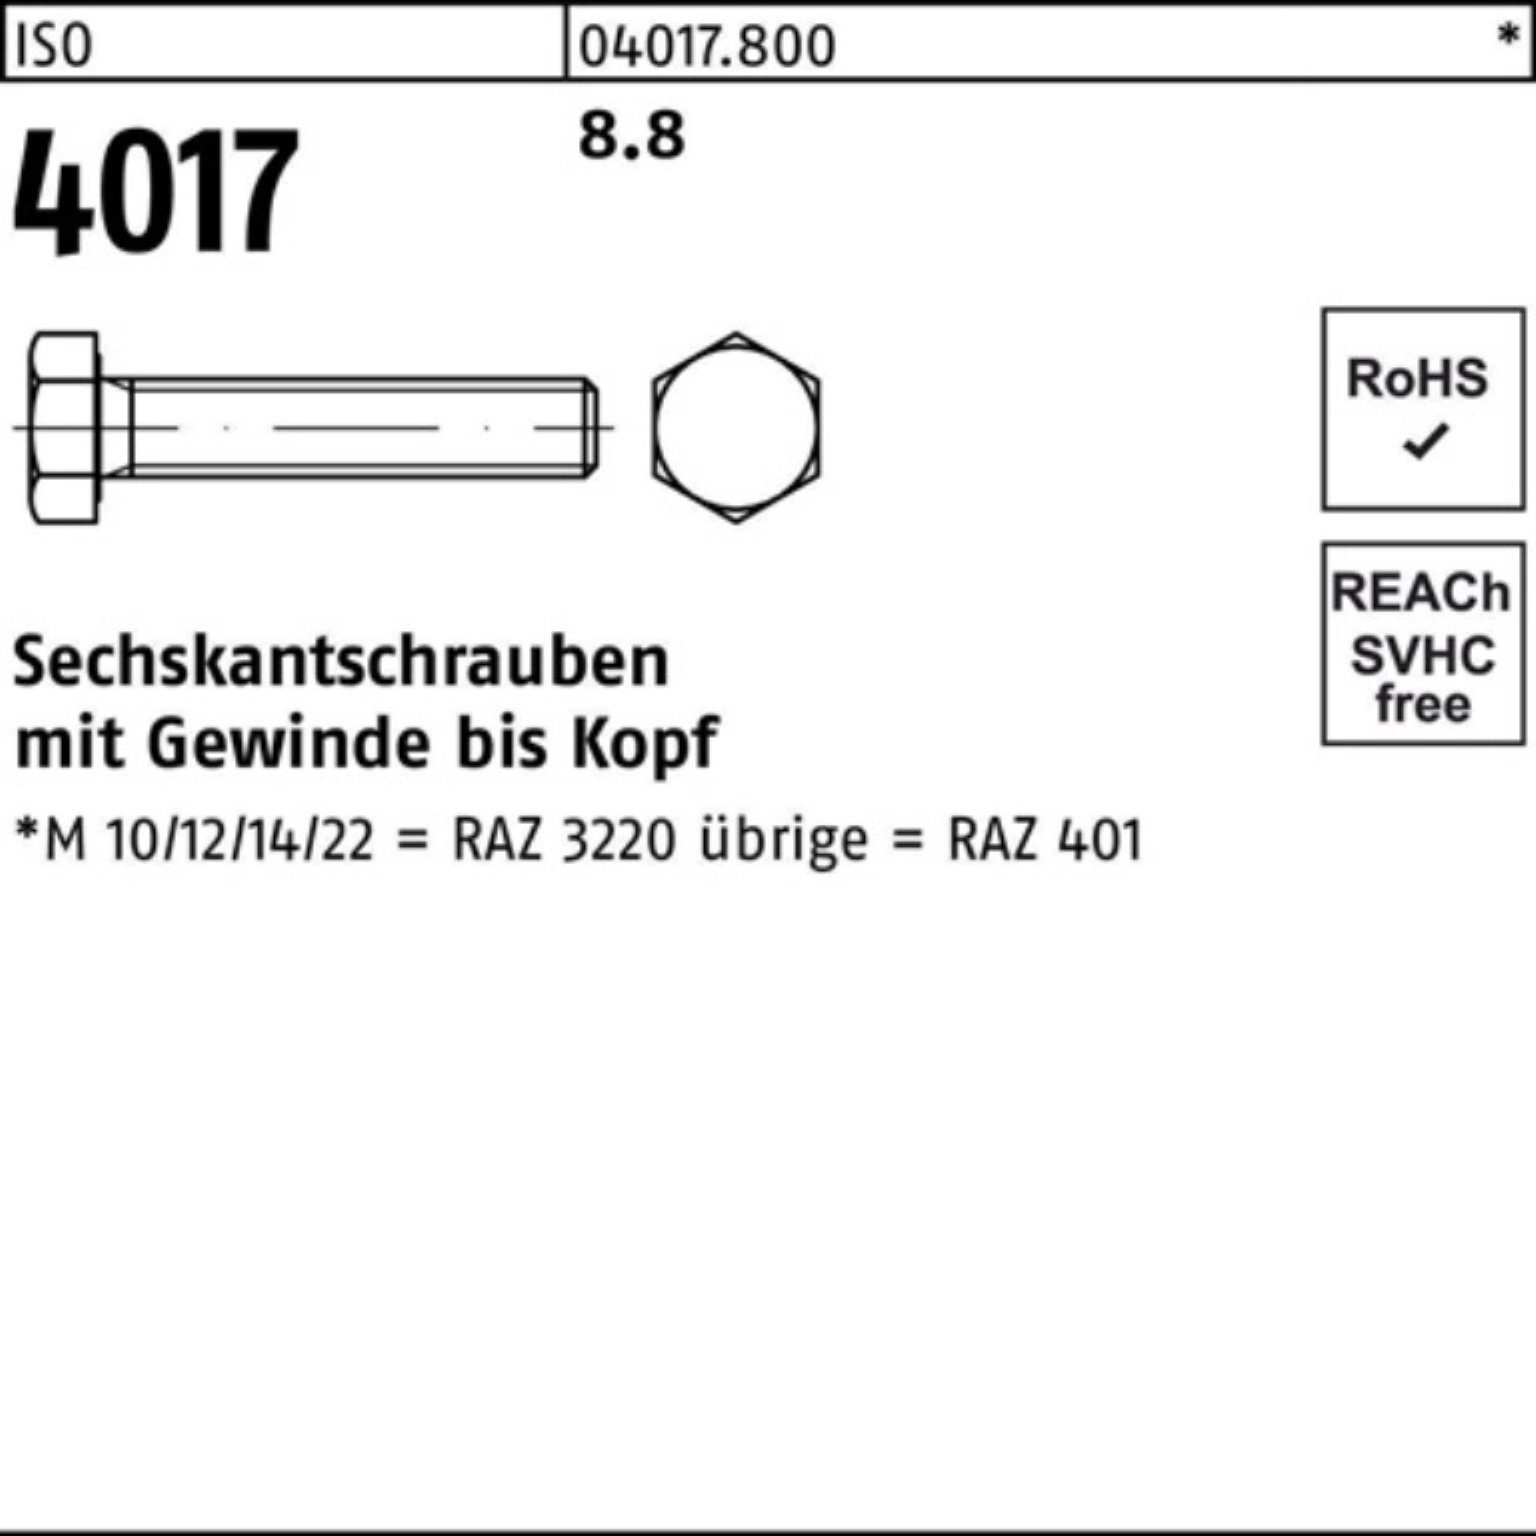 Bufab Sechskantschraube 100er Pack Sechskantschraube 4017 ISO VG 100 M5x ISO 8.8 401 12 Stück